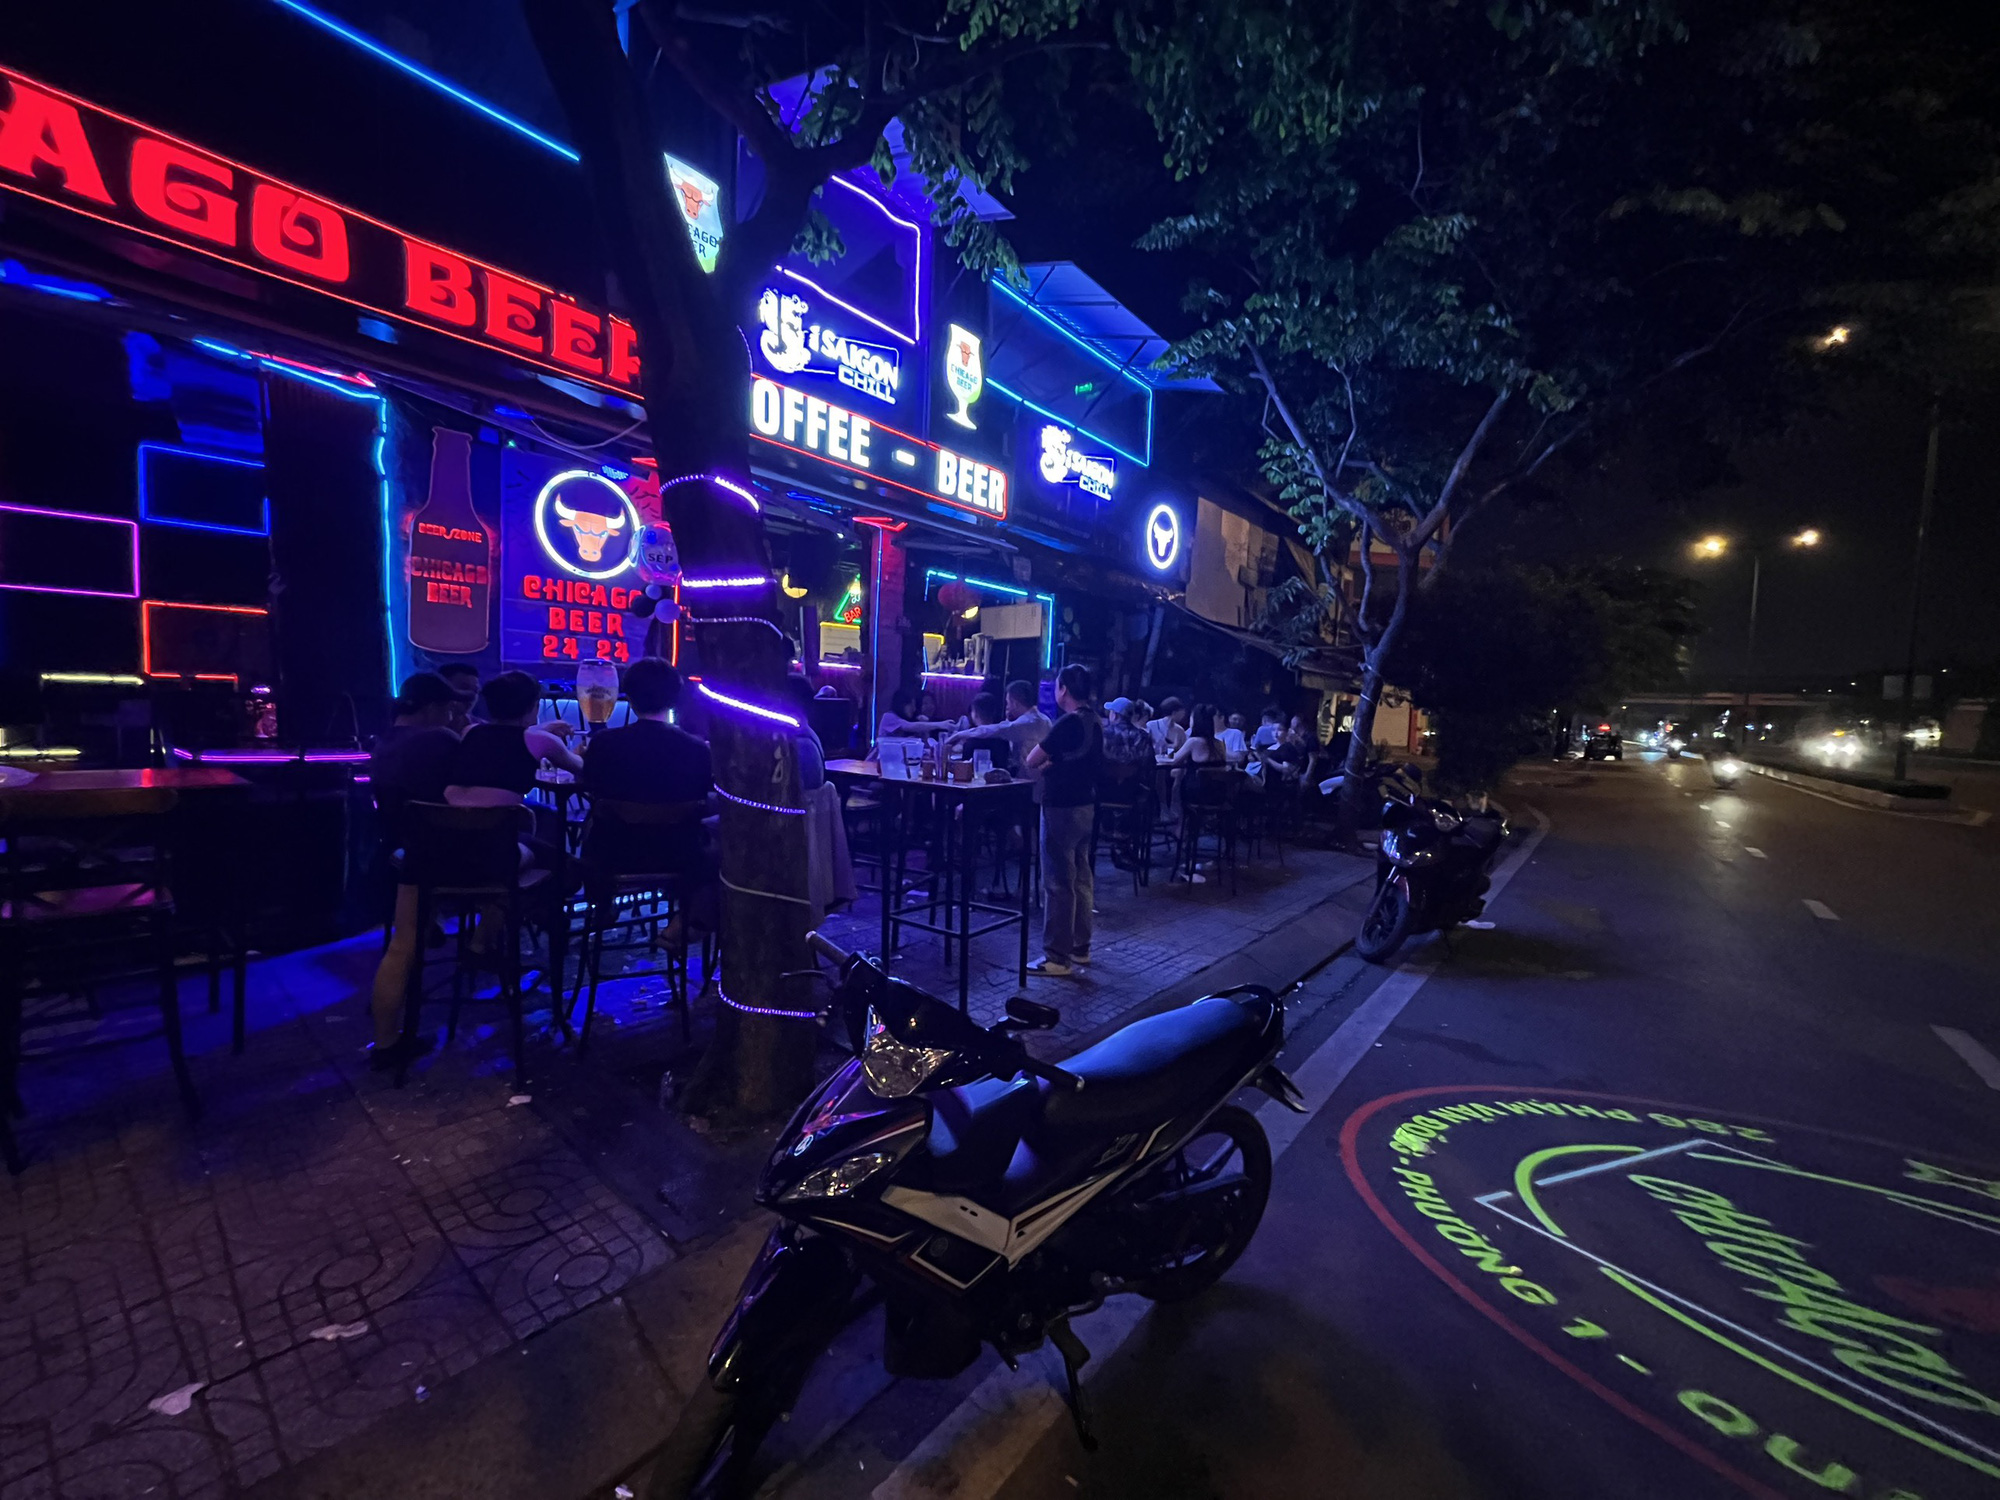 Hàng loạt quán trên đường Phạm Văn Đồng mở nhạc xập xình bị xử lý - Ảnh 2.